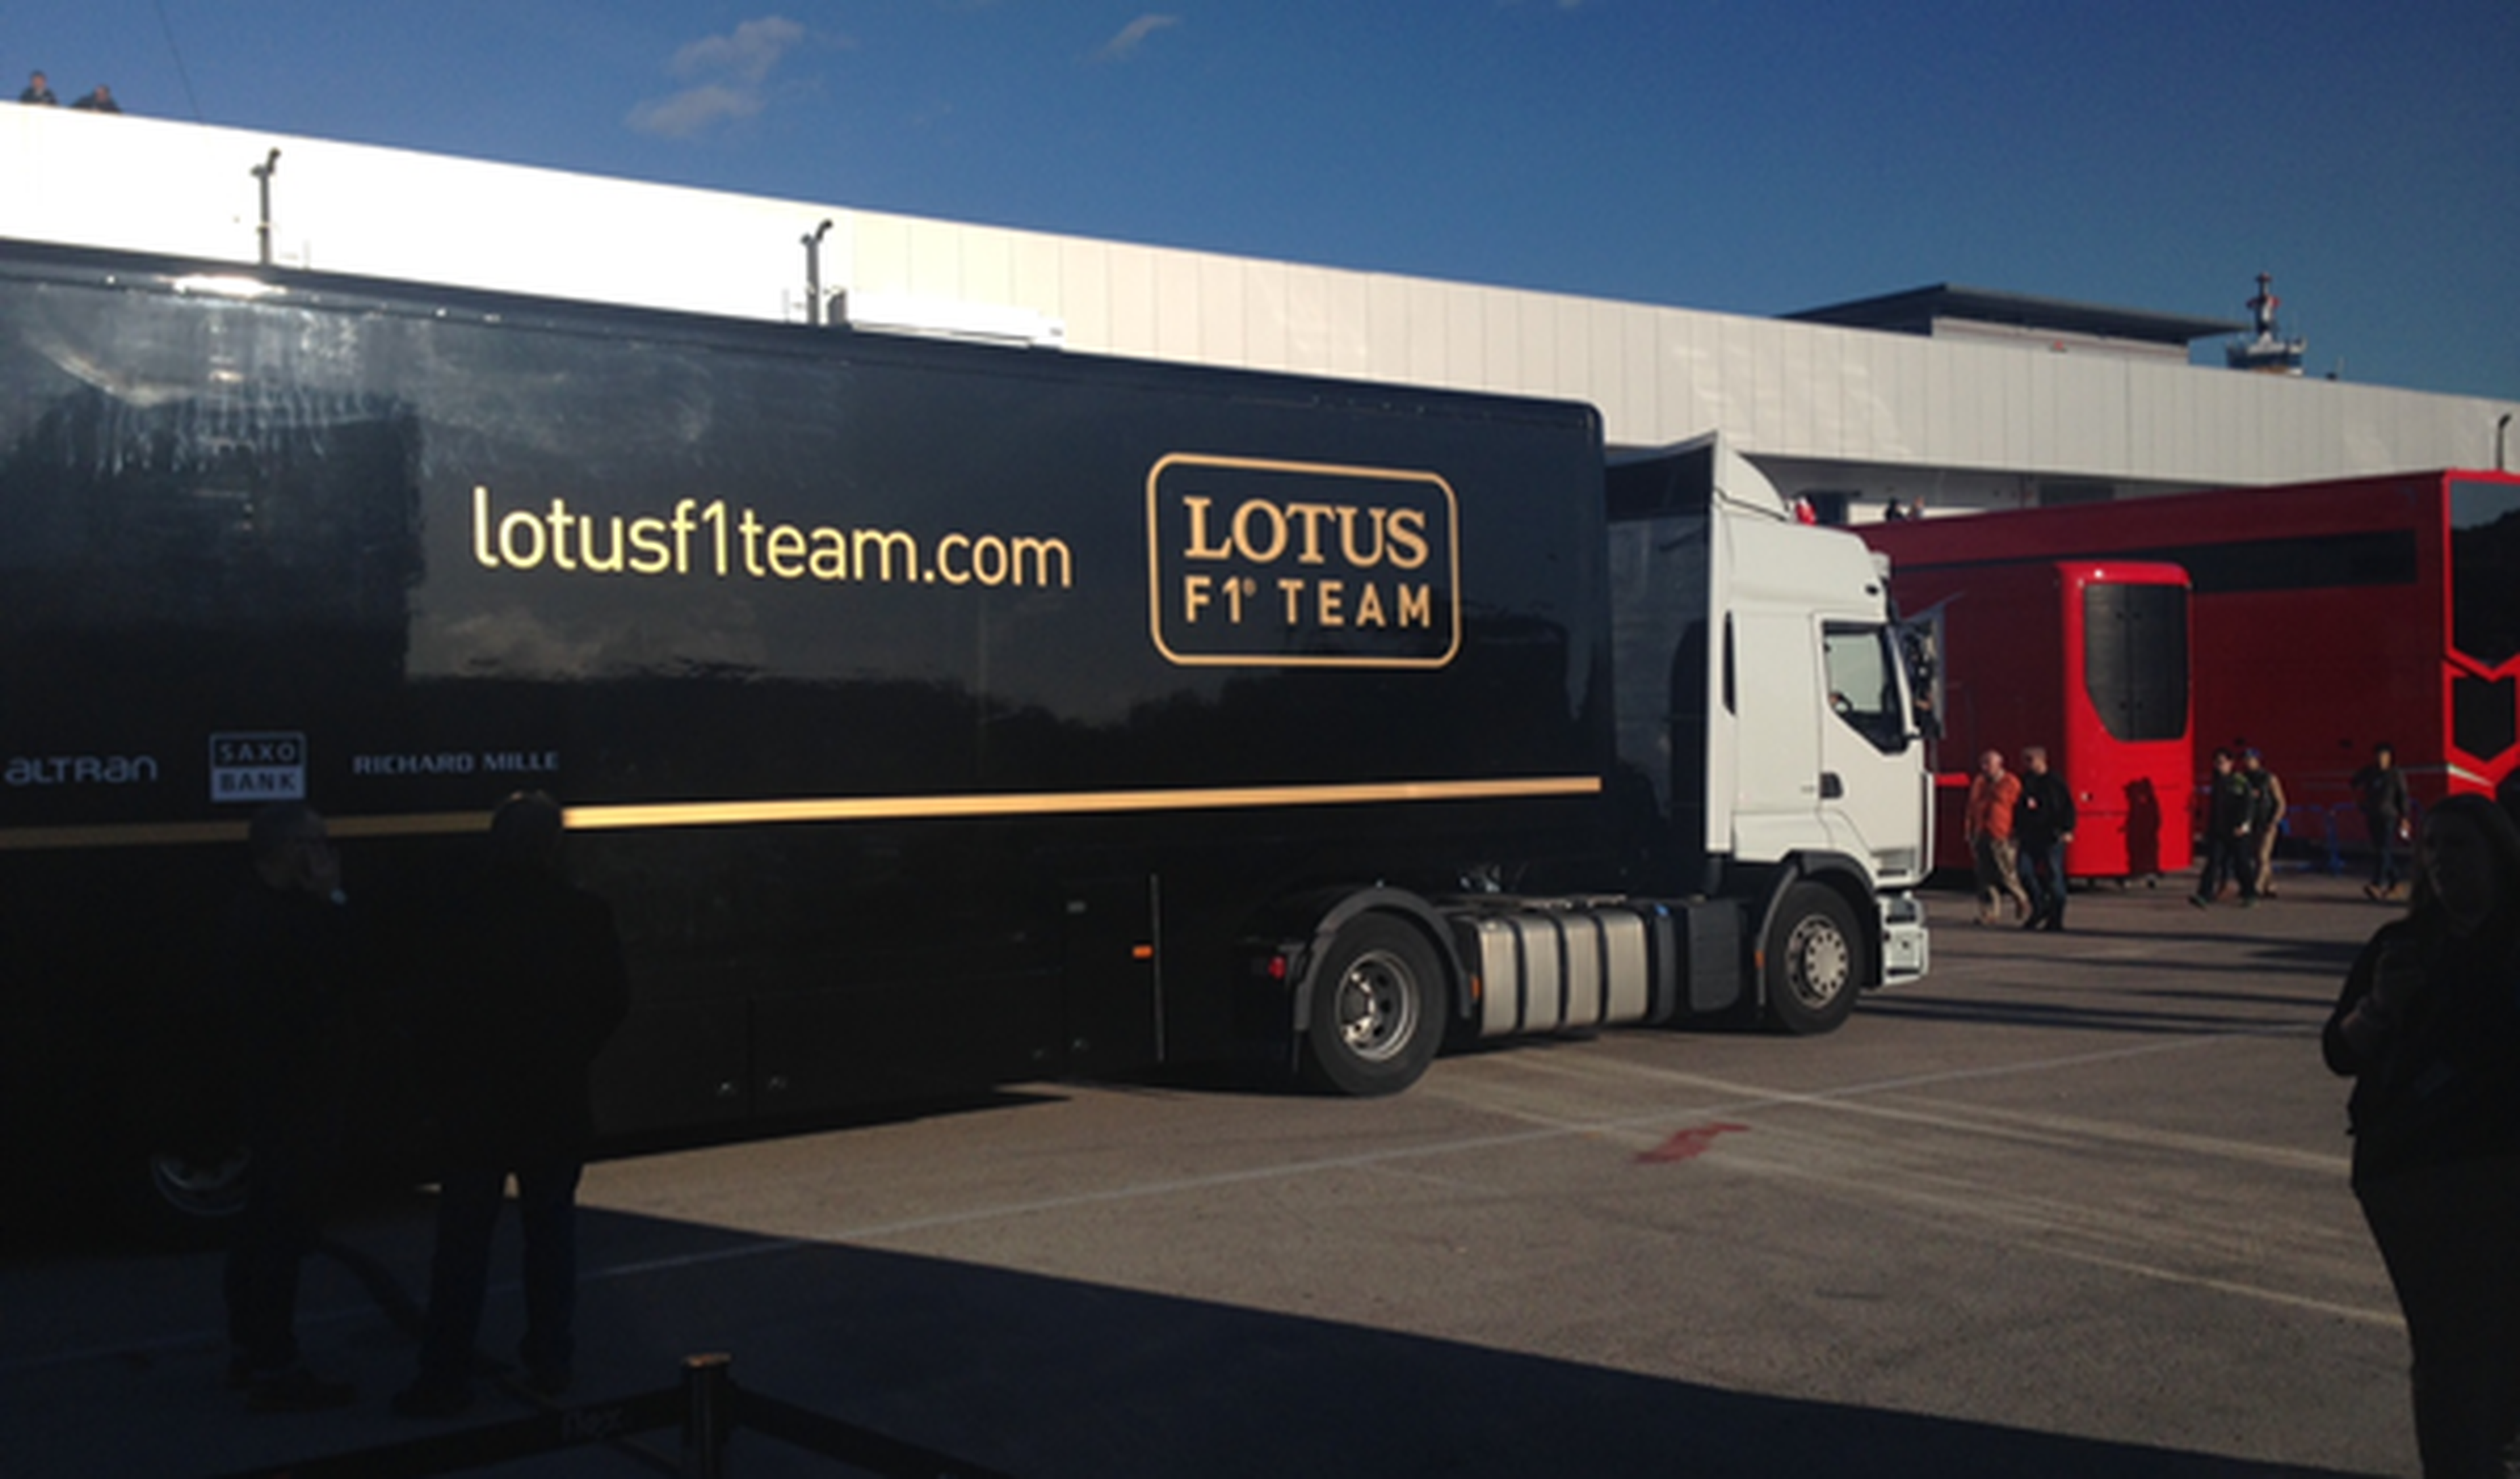 El Lotus E23 llega al Circuito de Jerez